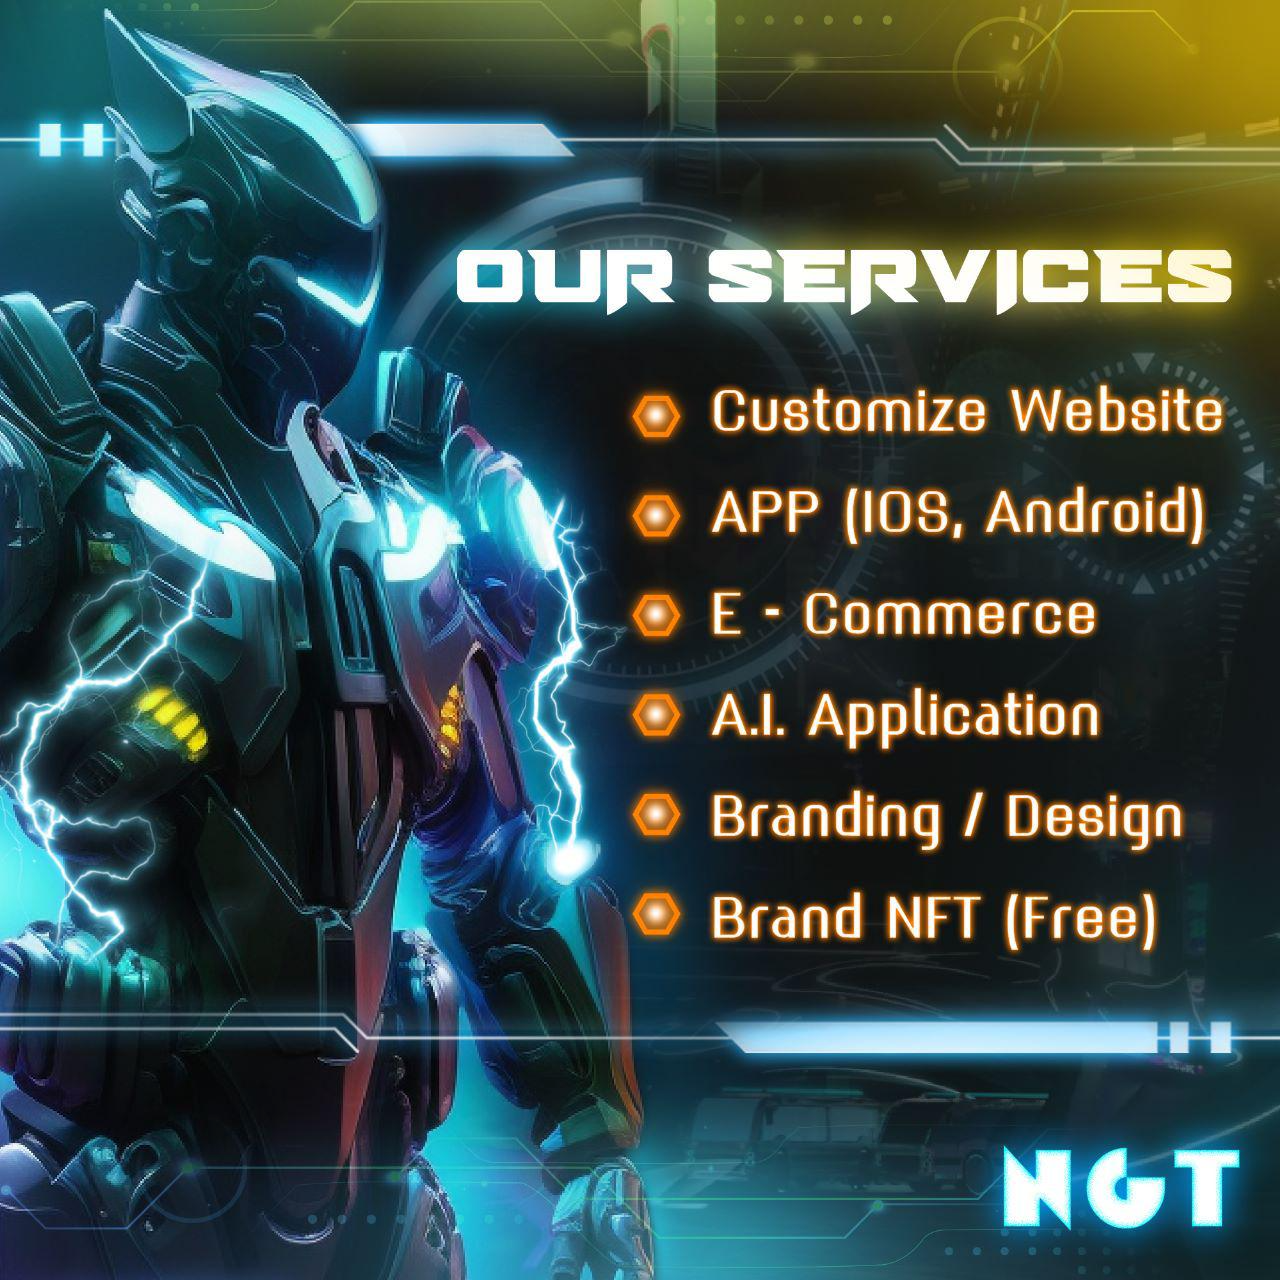 技術開發服務

-網站 定制設計
-APP 應用 (IOS, Android)
-A.I. 程式開發
-電商 / 企業系統
-品牌 / 設計
-品牌 NFT (免費)

📍www.NGT.hk